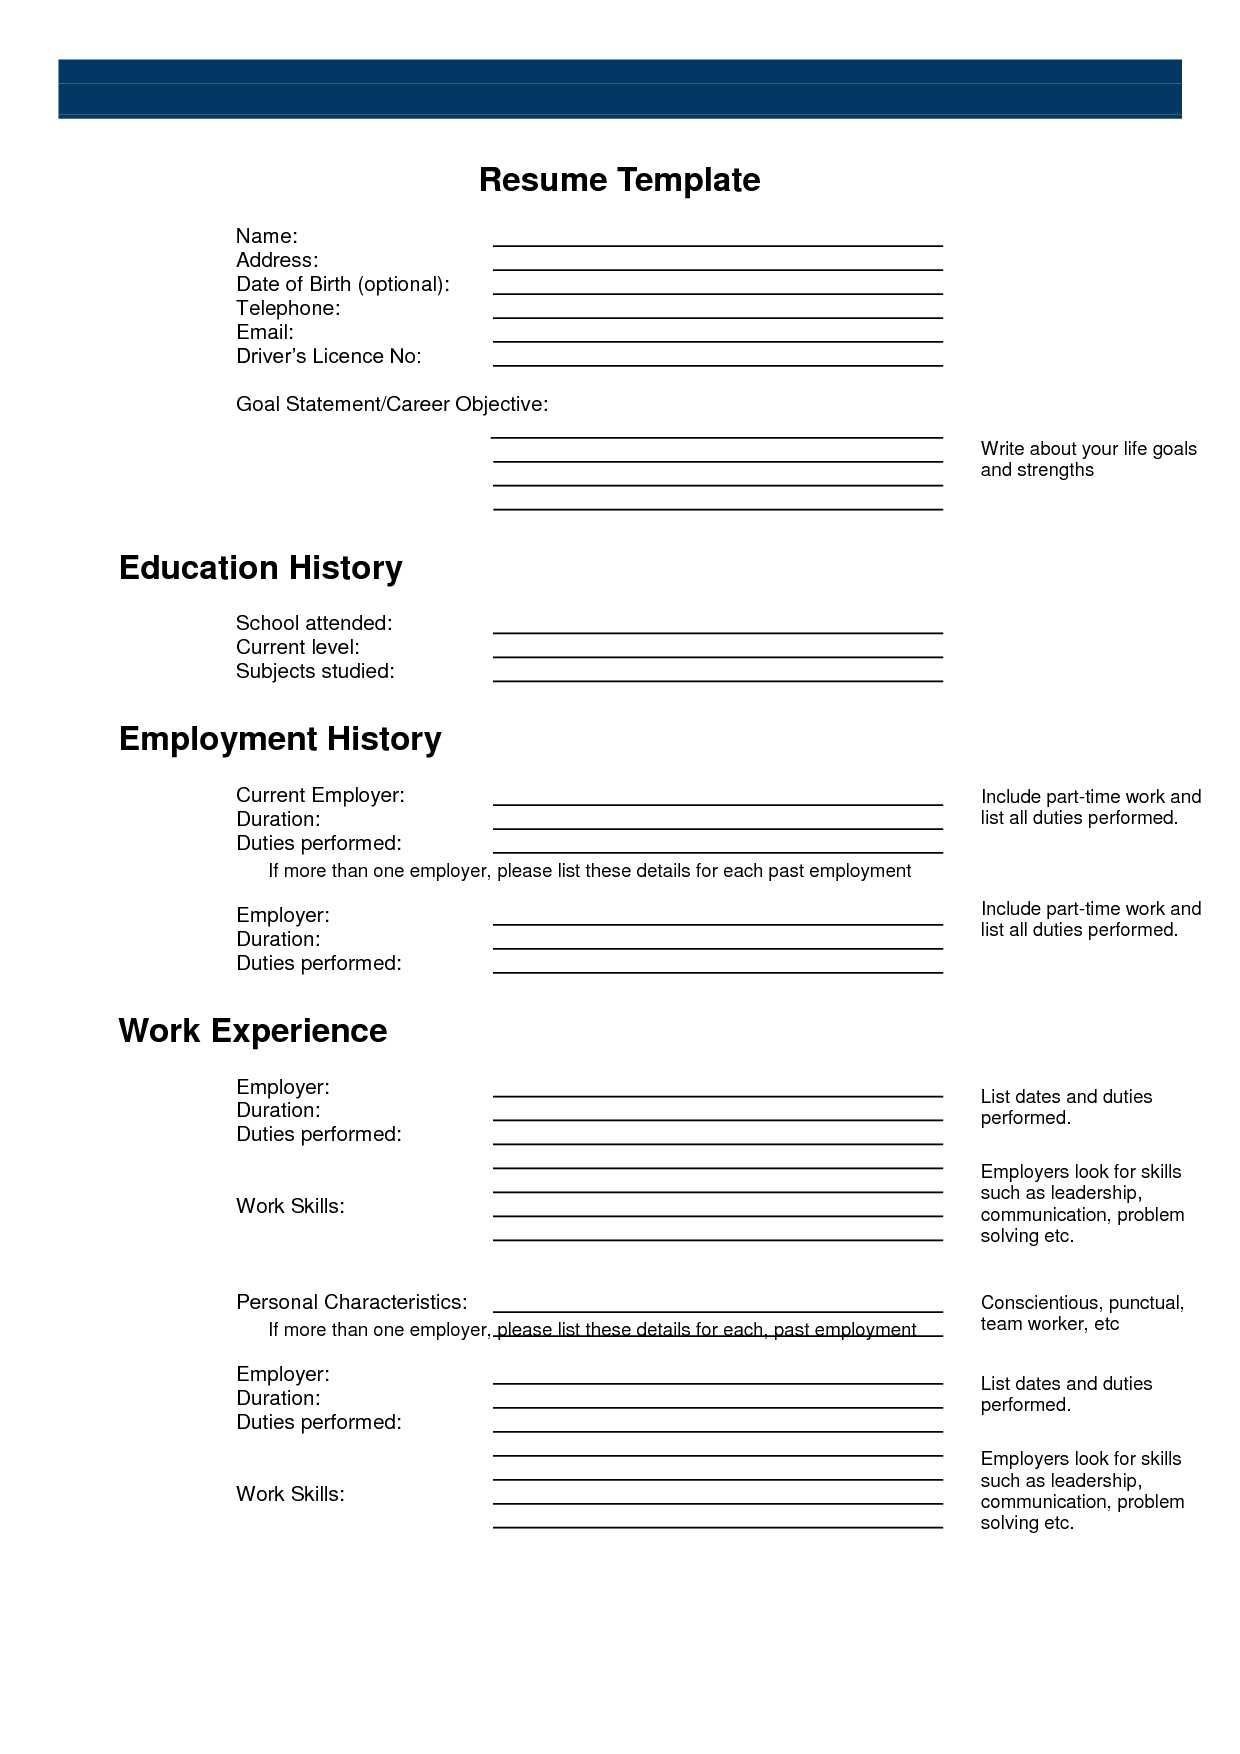 Pinanishfeds On Resumes | Free Printable Resume, Free Printable - Free Online Resume Templates Printable